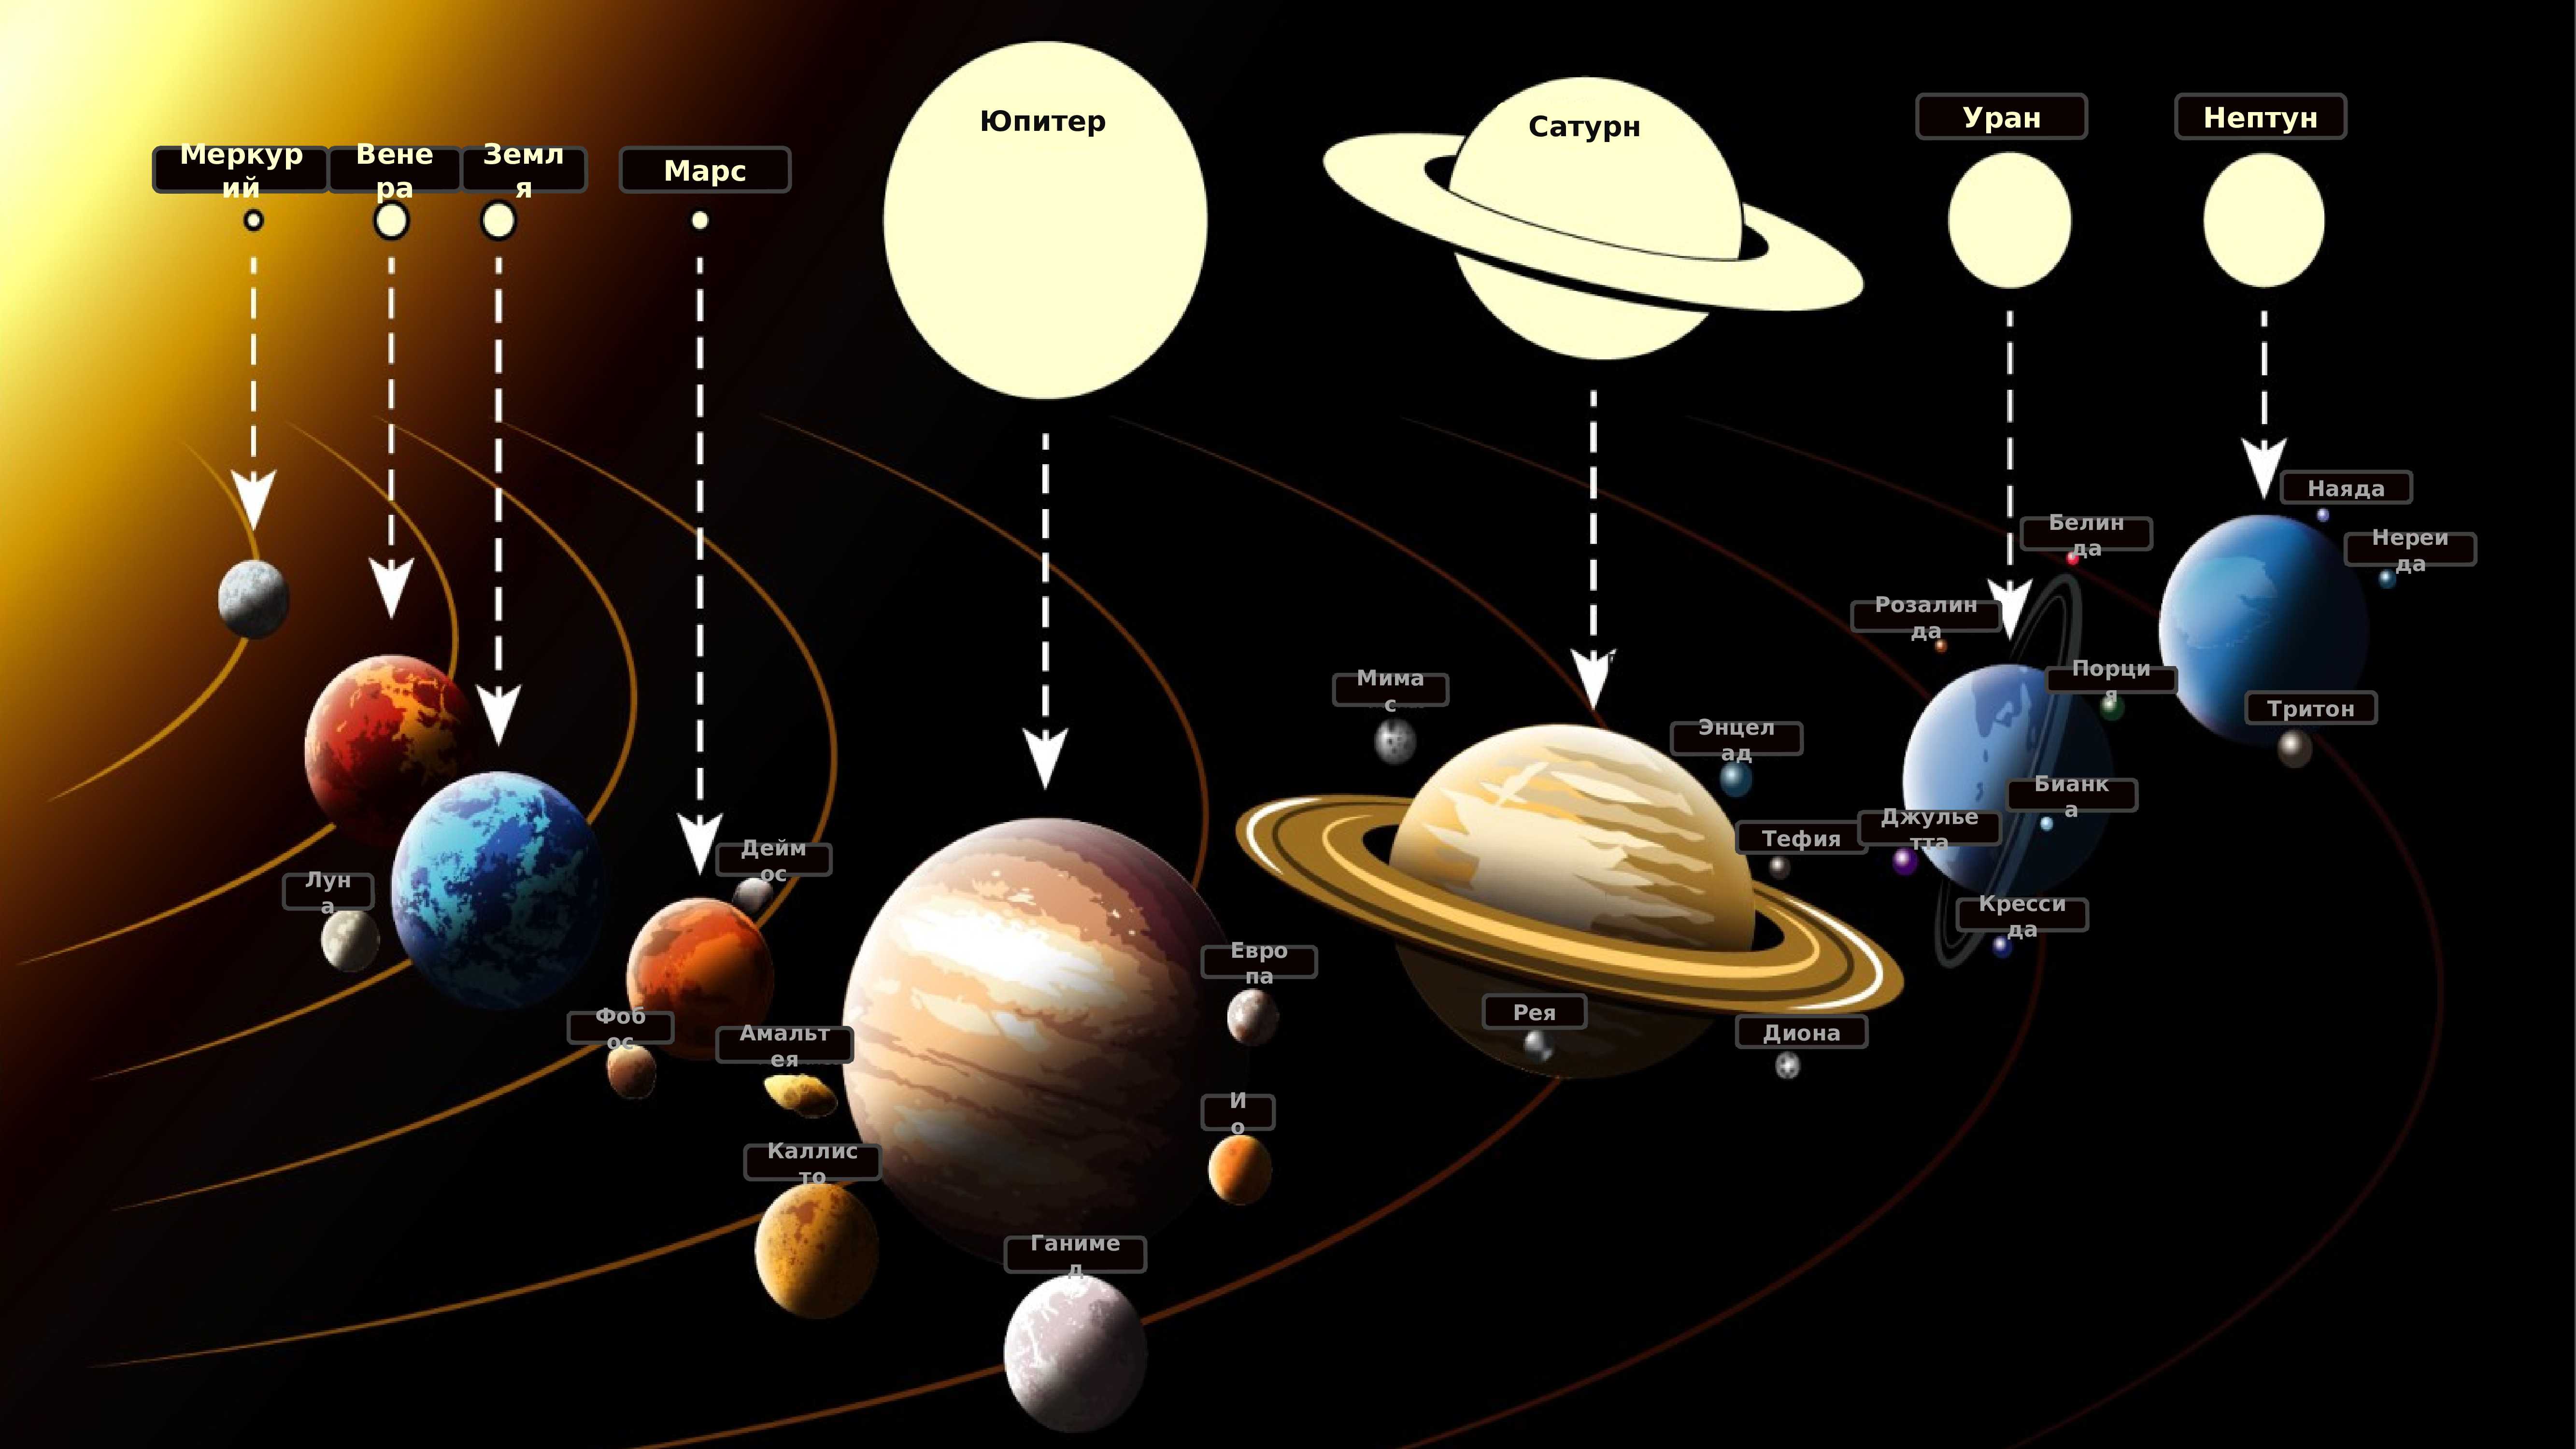 Про планеты солнечной системы для детей